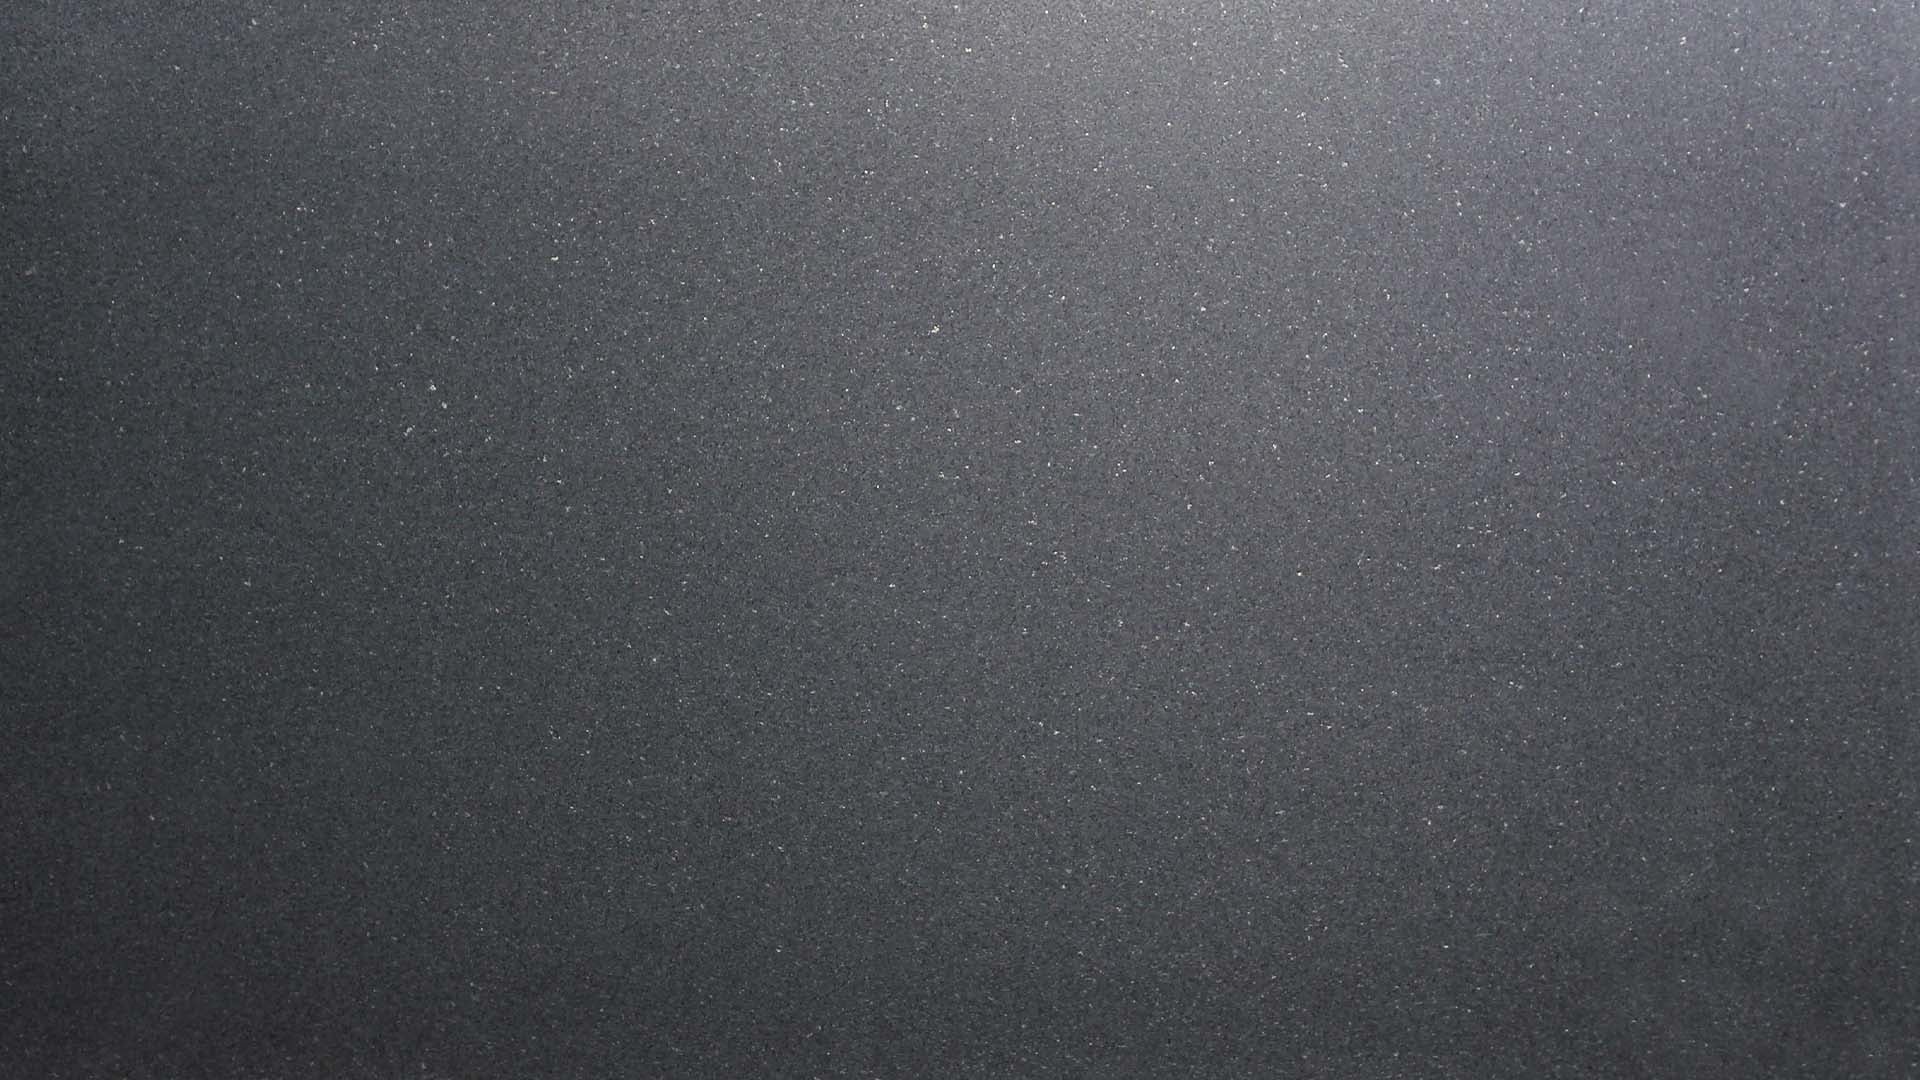 Naturstein Küchenarbeitsplatte in gesamt schwarz-atnhrazithfarbender, ruhiger und feiner Oberfläche mit dezent weißen Einsätzen in semi gloss in der Farbe Argento Black.